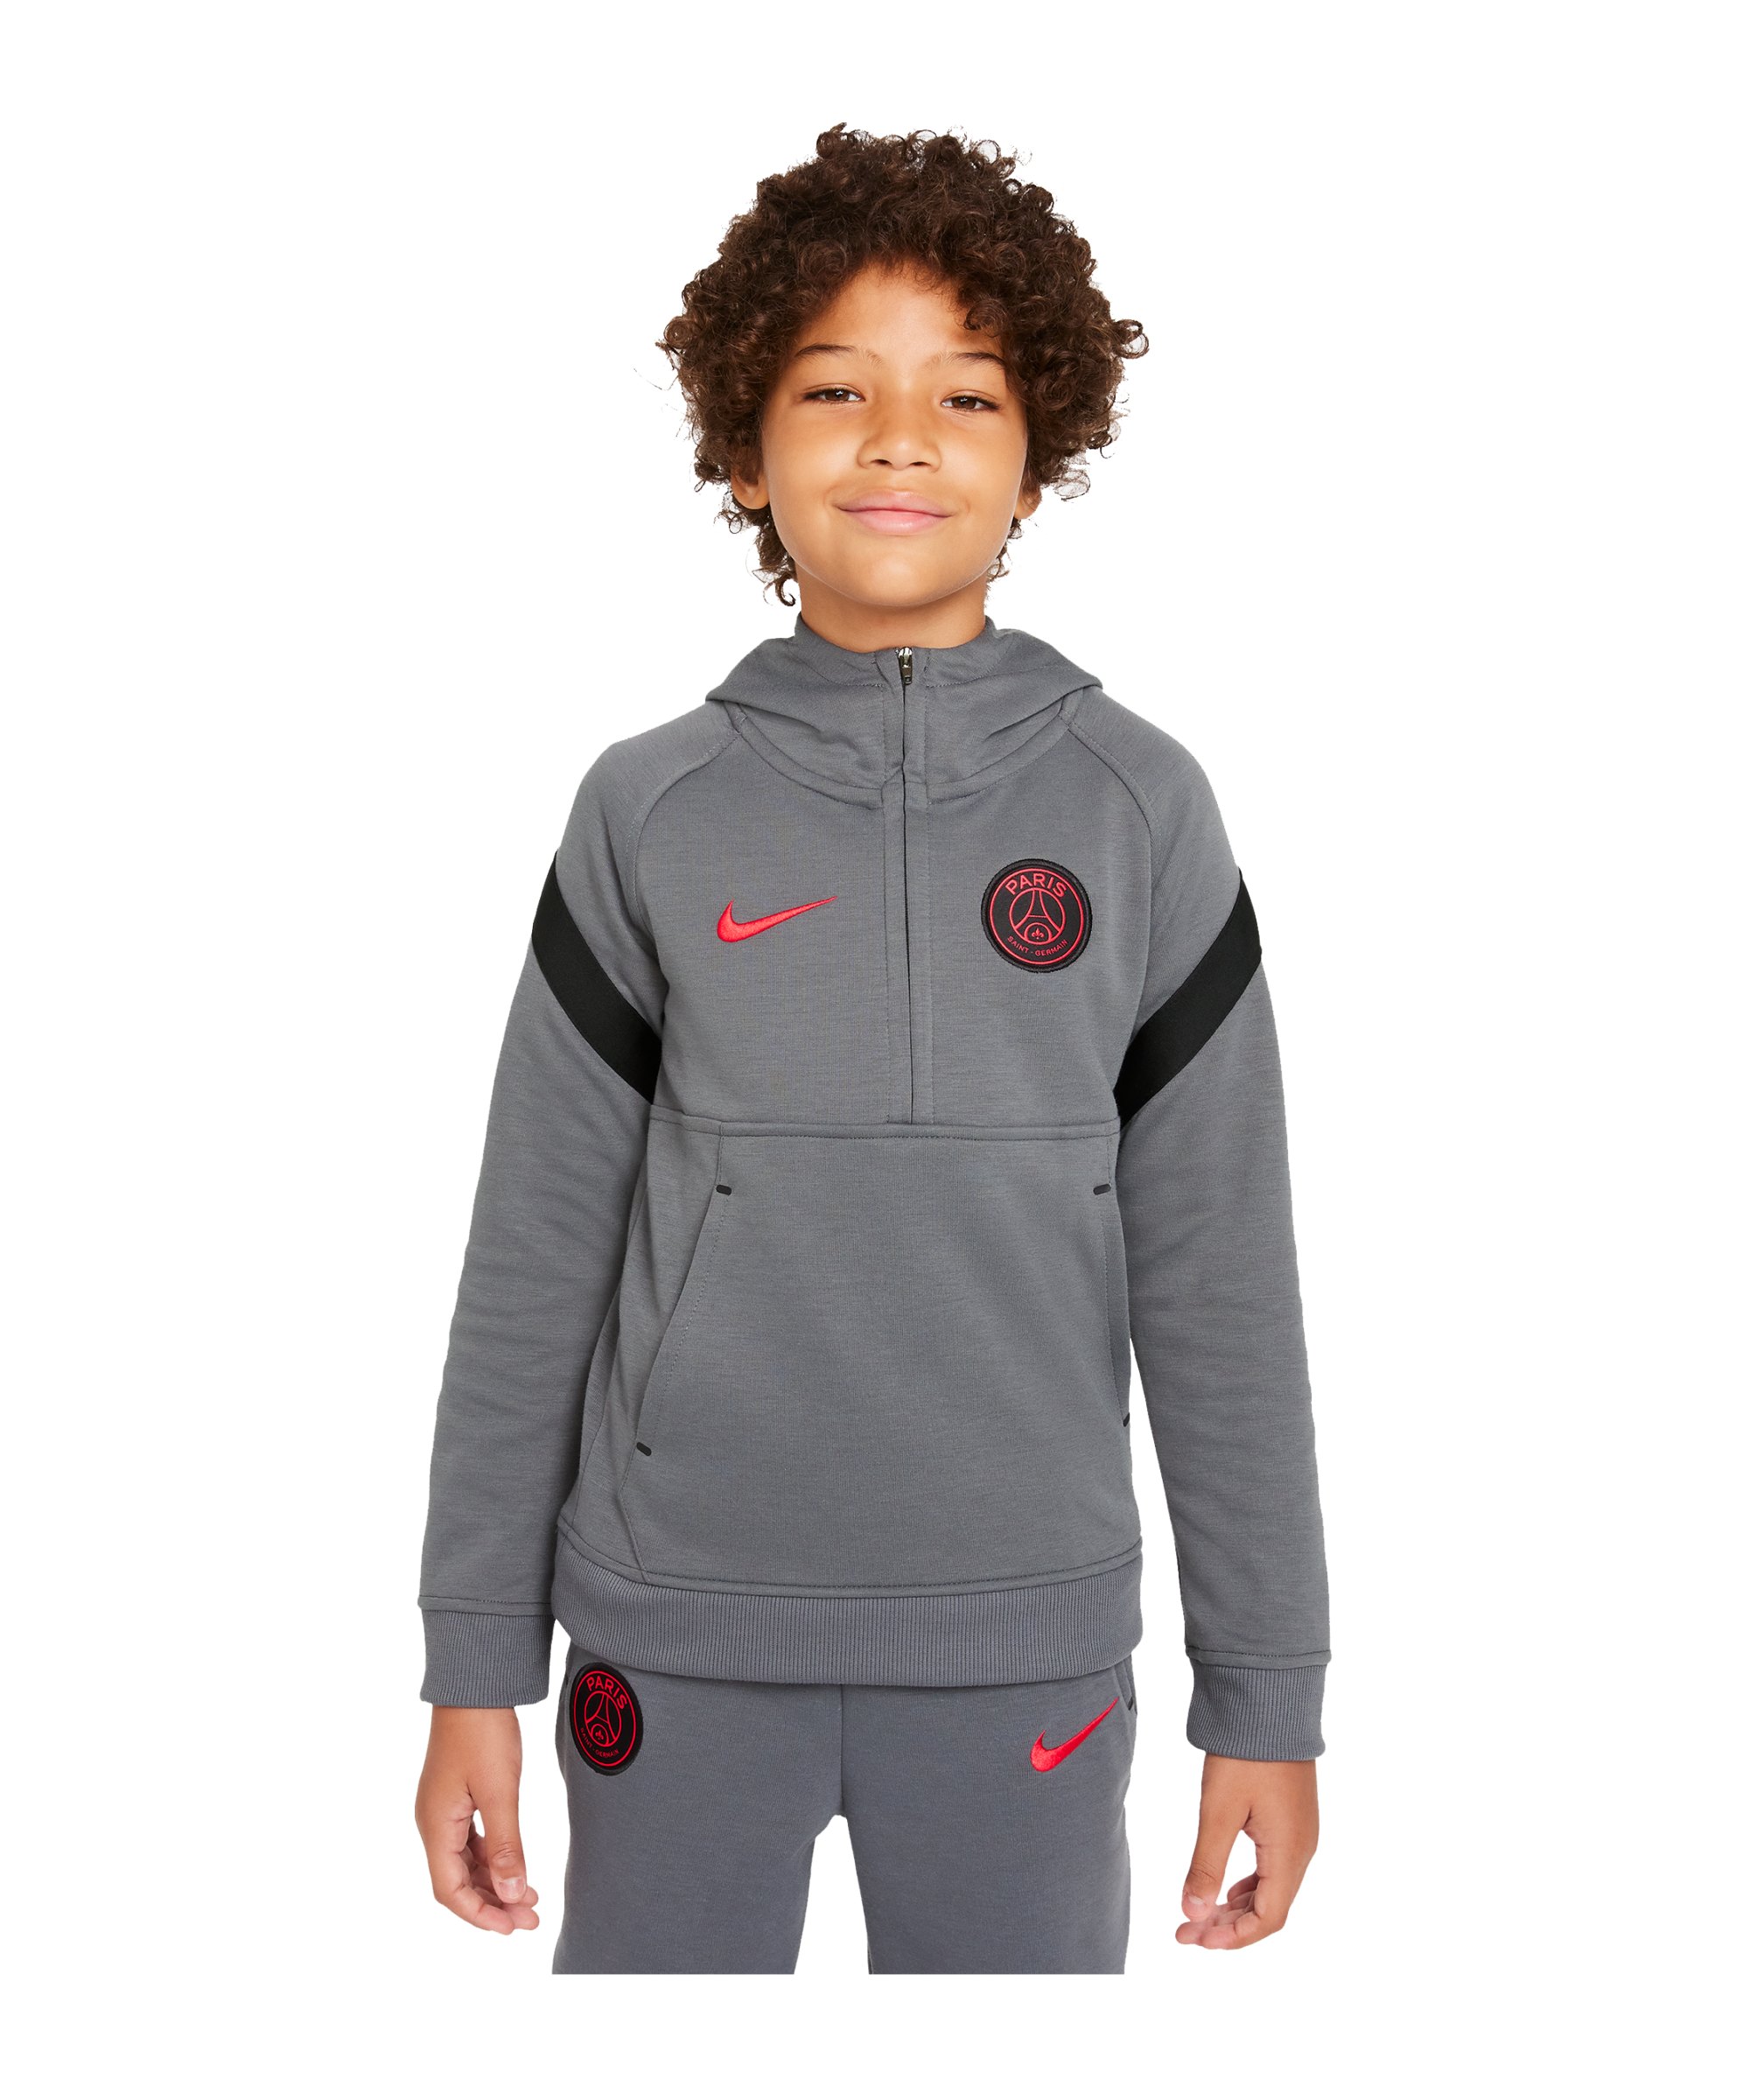 Nike Paris St. Germain Fleece Hoody Kids Grau F025 - grau